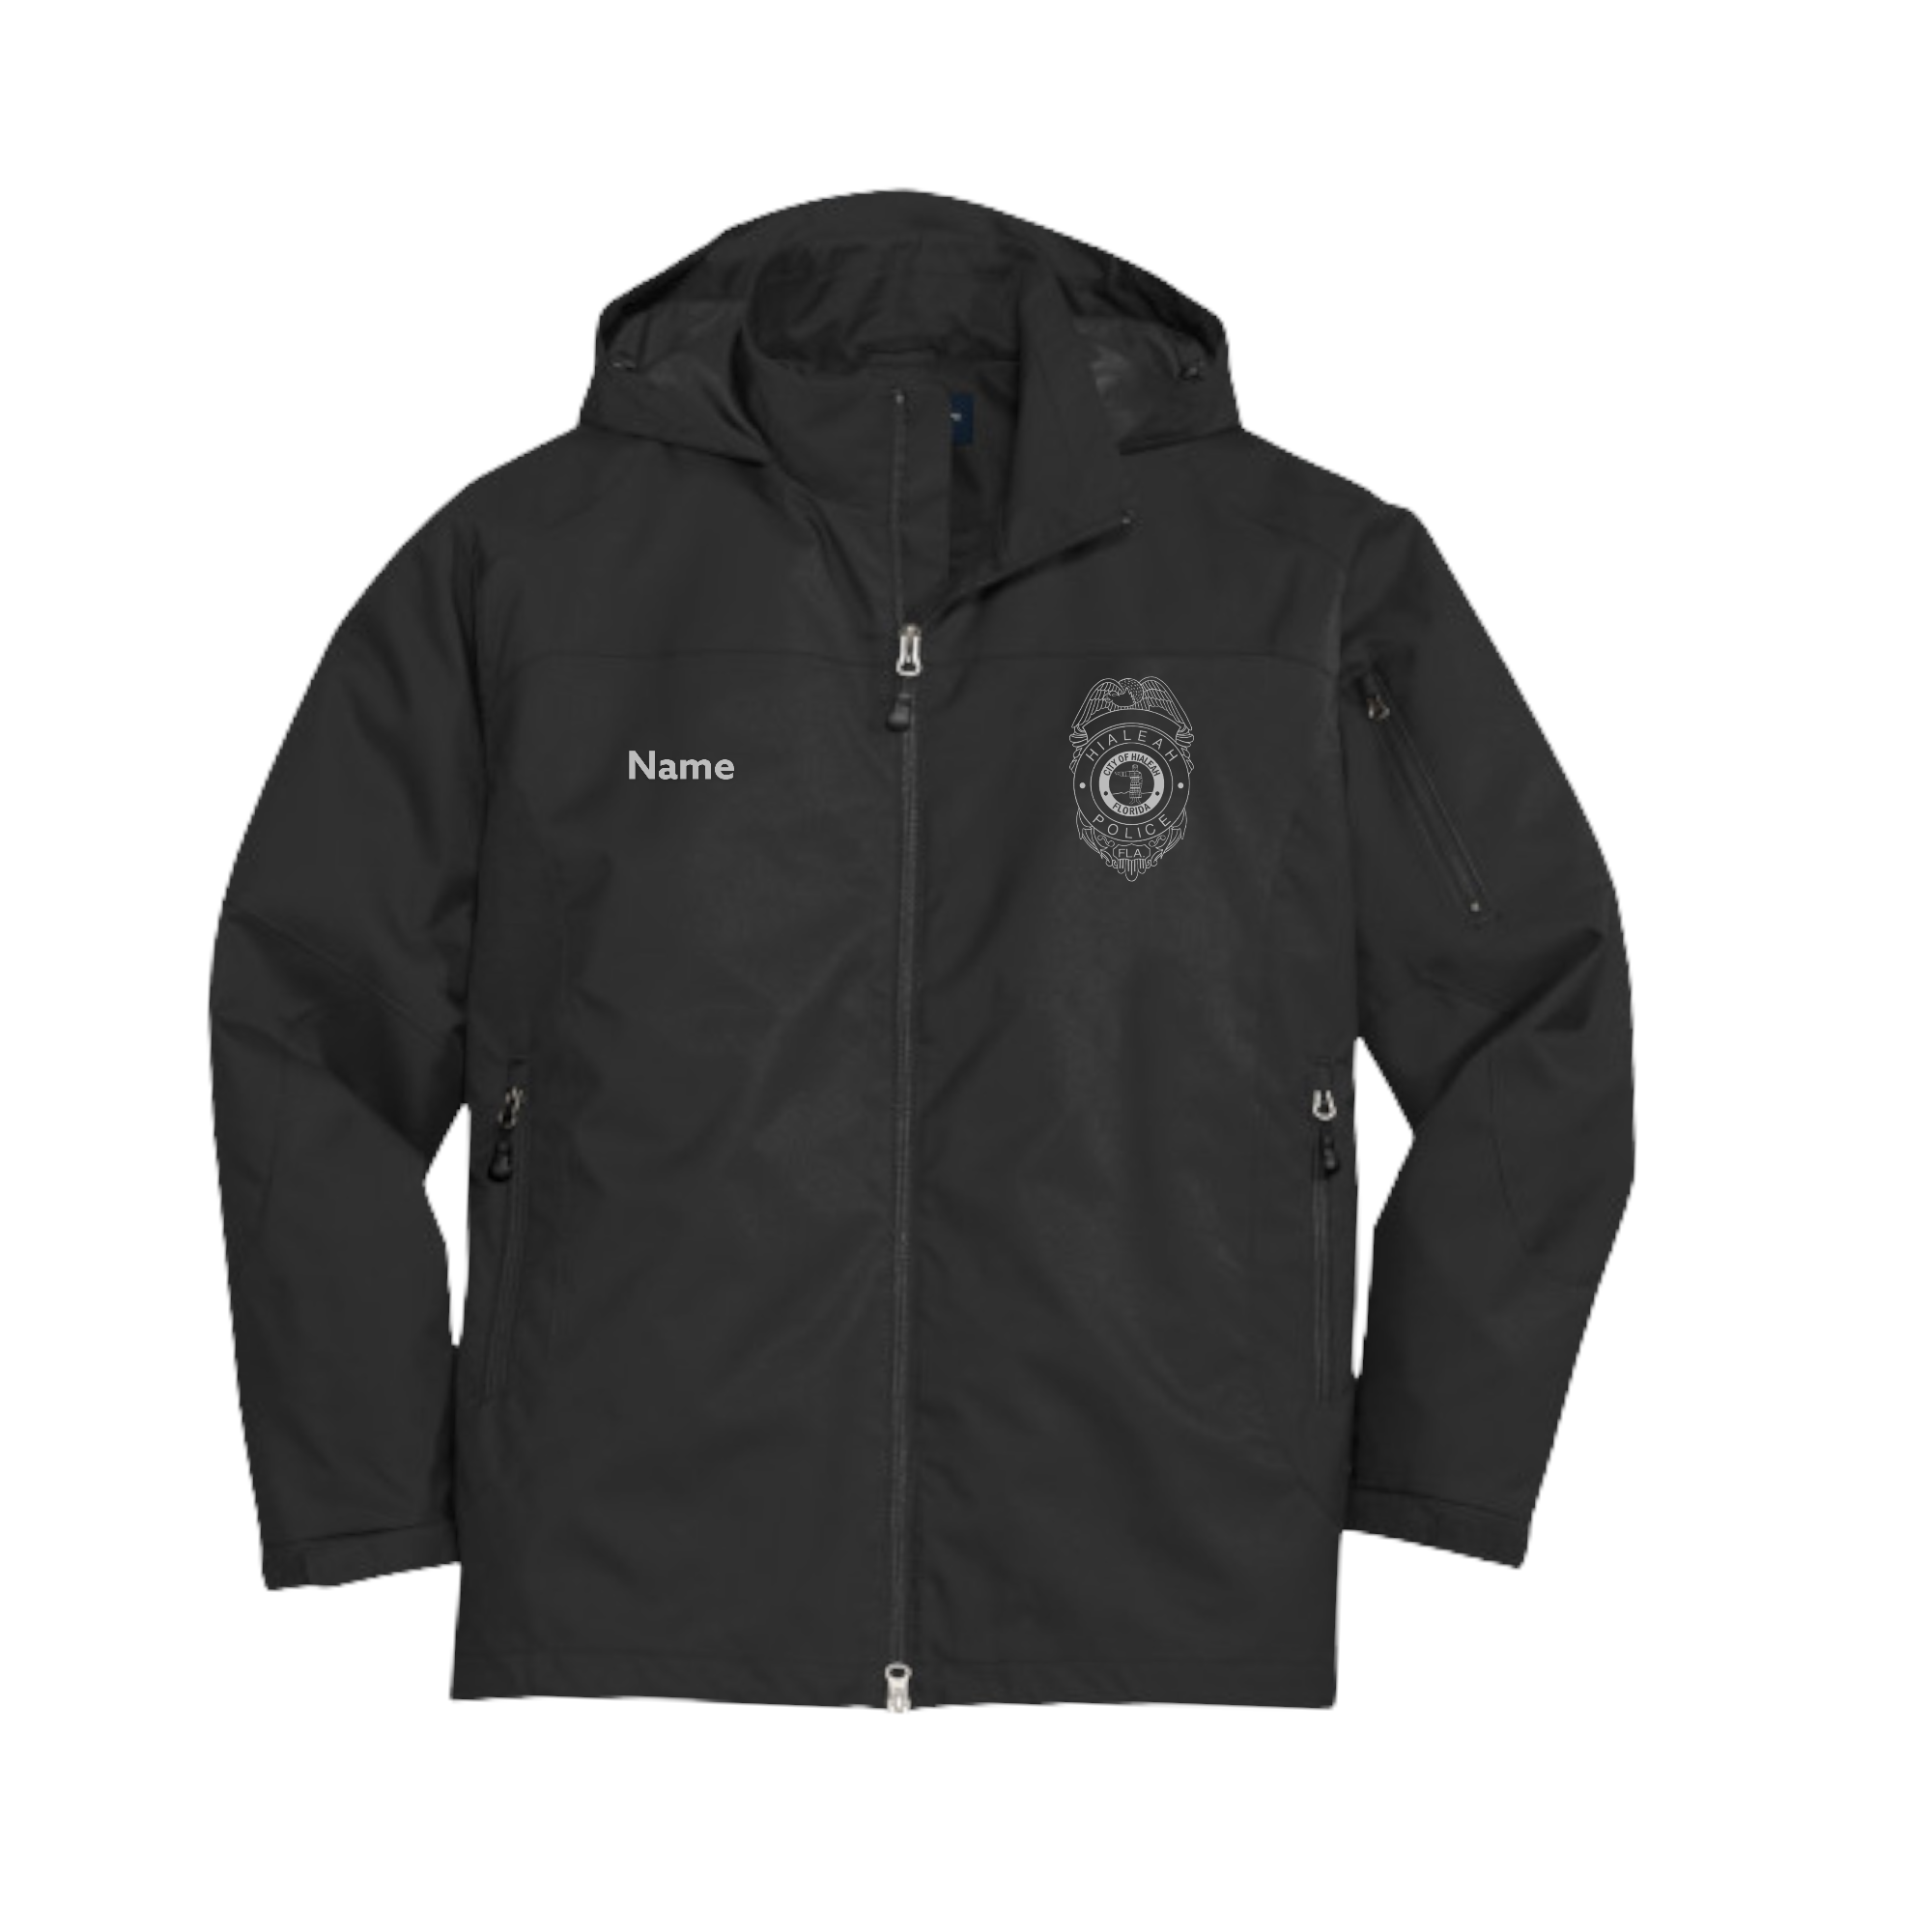 Hialeah Police Department Endeavor Jacket